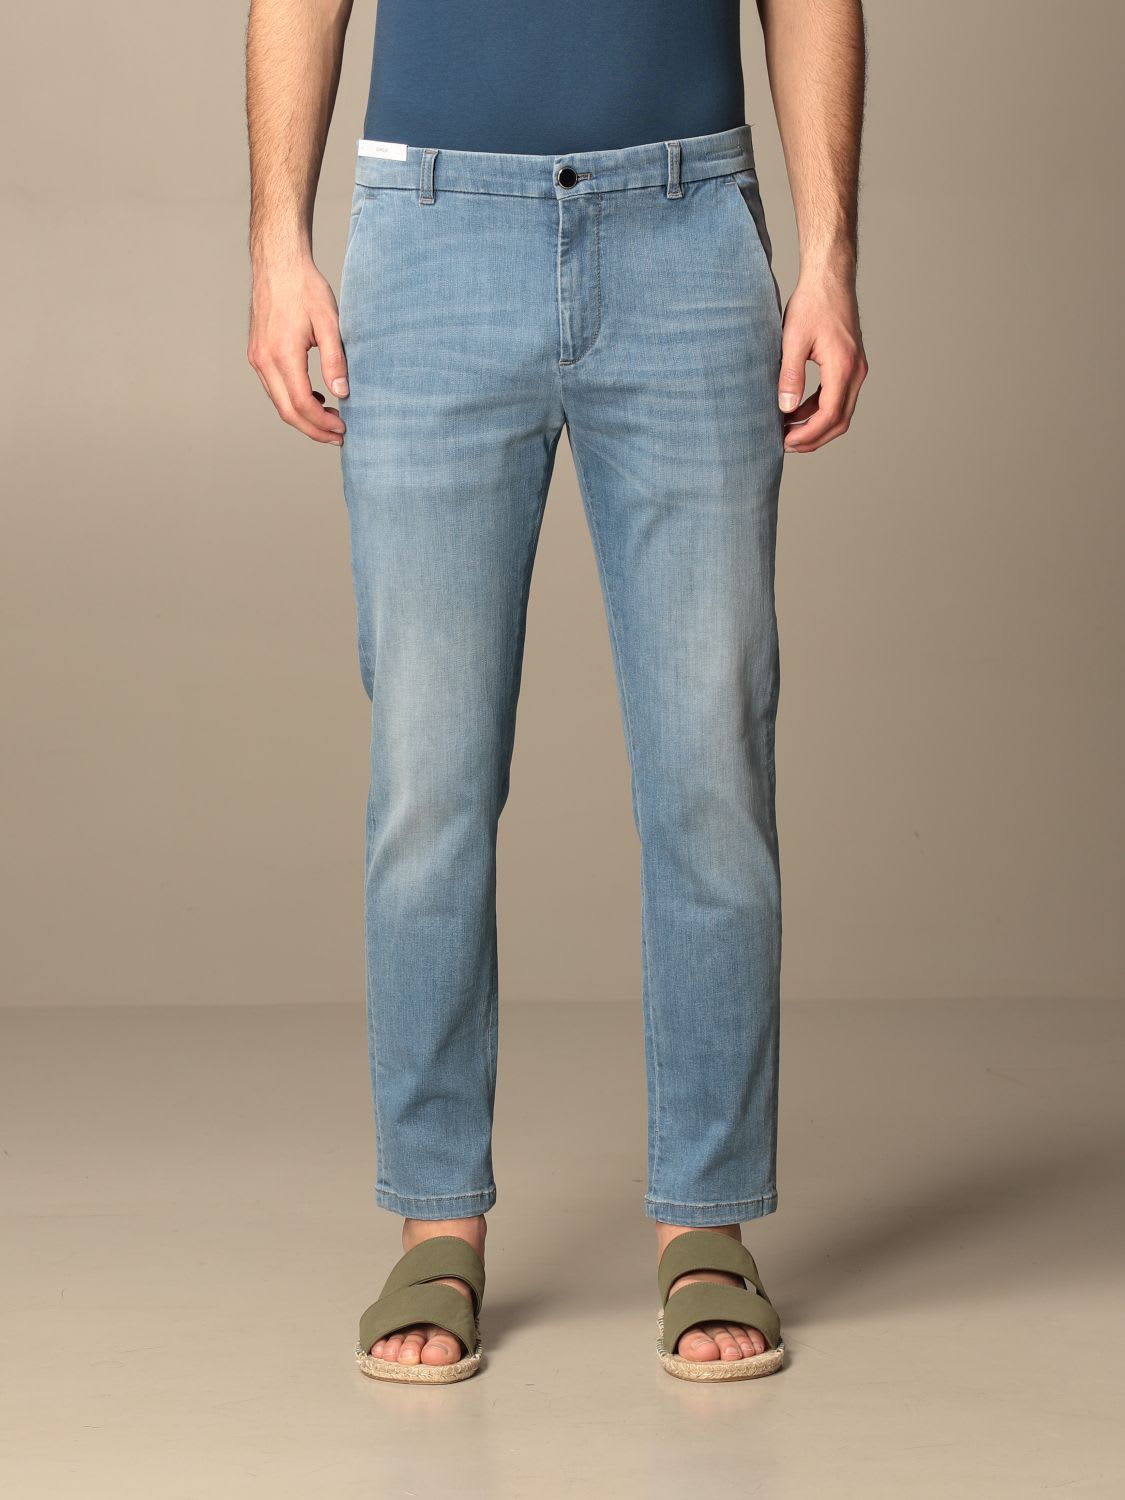 Pt01 Pt Jeans Pt05 Denim Jeans With Super Slim America Pockets